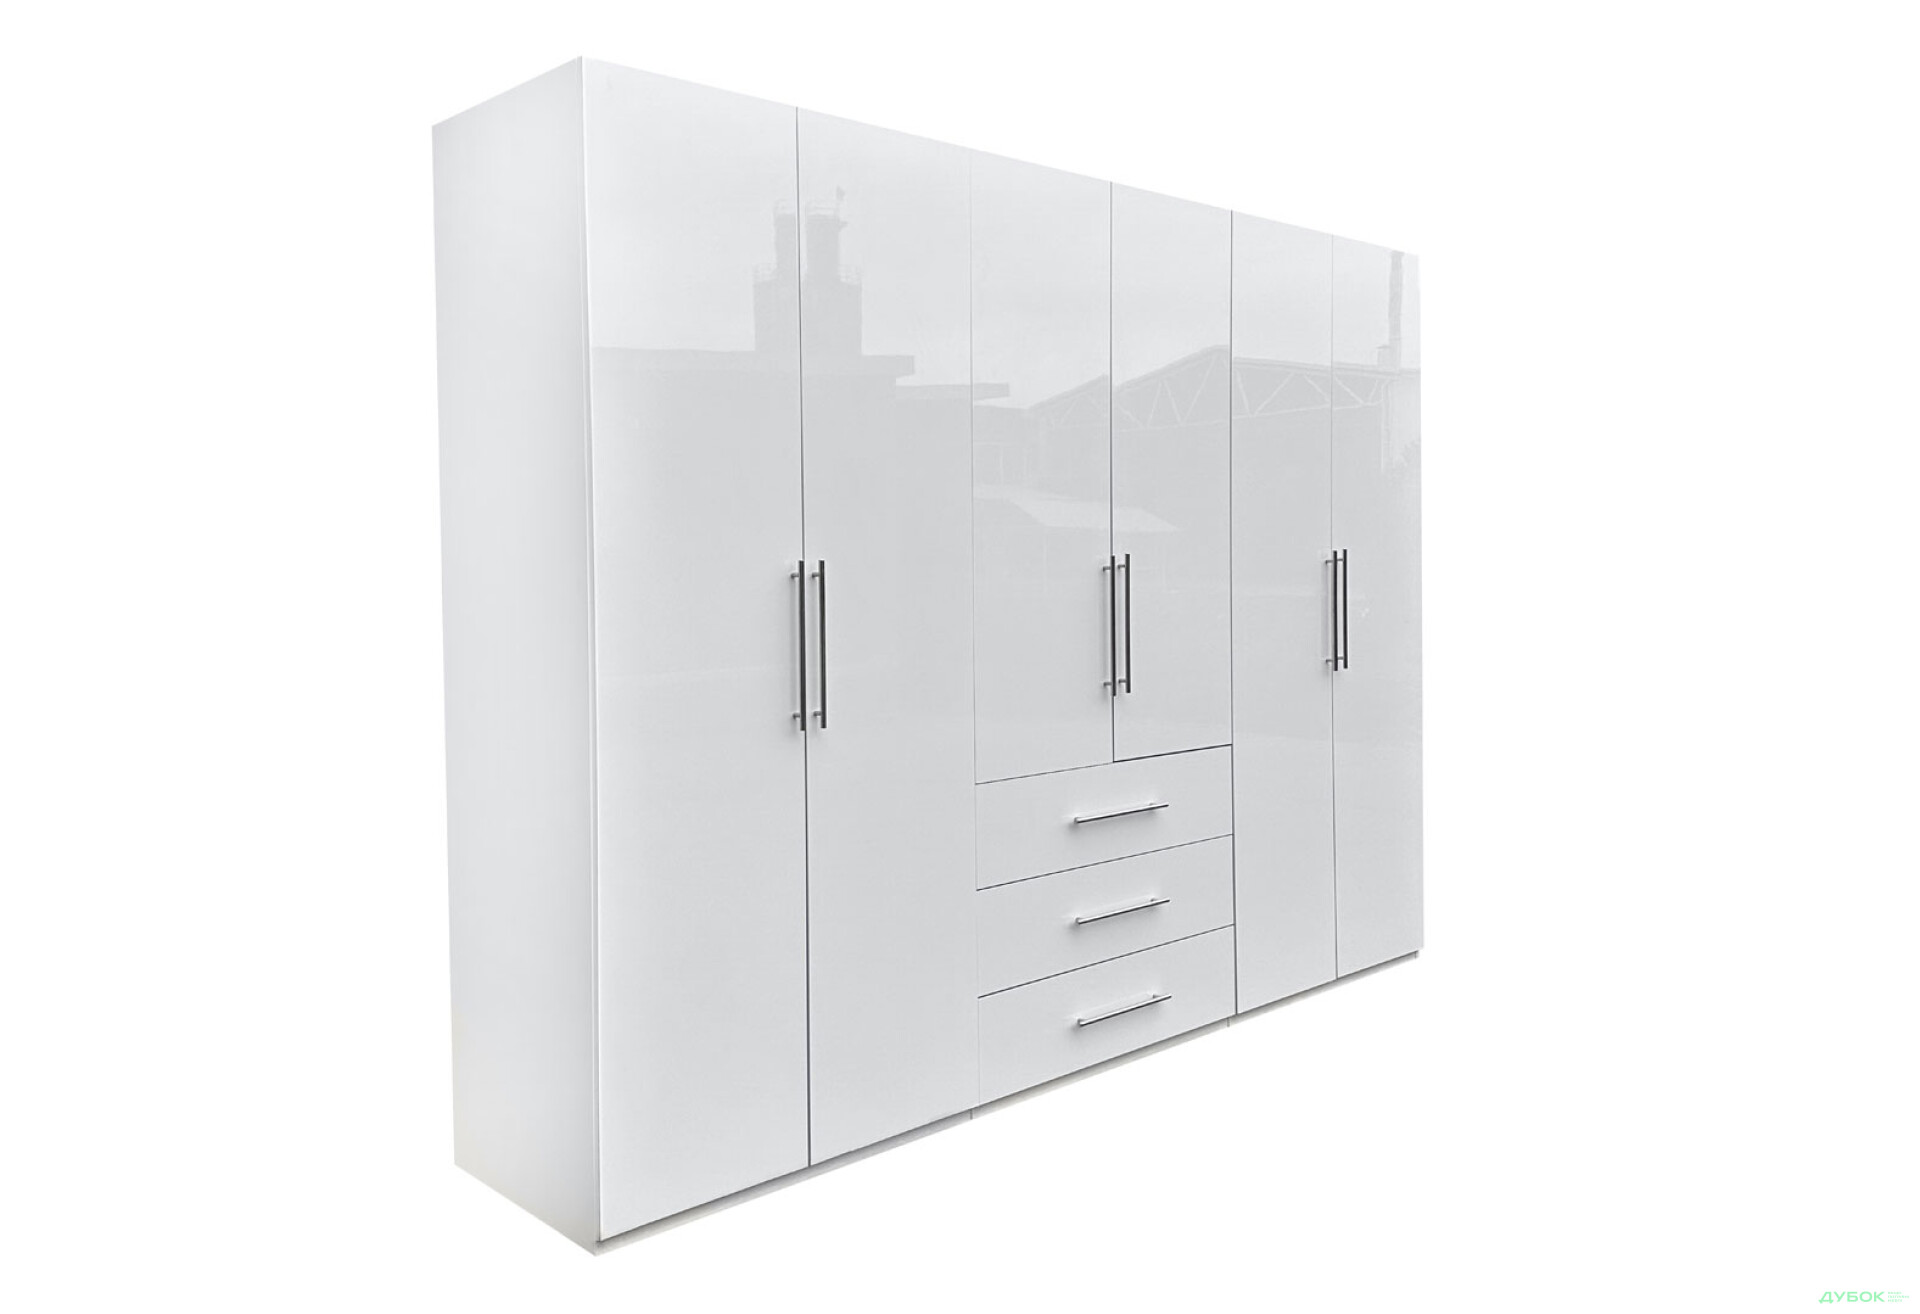 Фото 3 - Шкаф MiroMark Магнум 6-дверный з 3 ящиками 294 см, белый